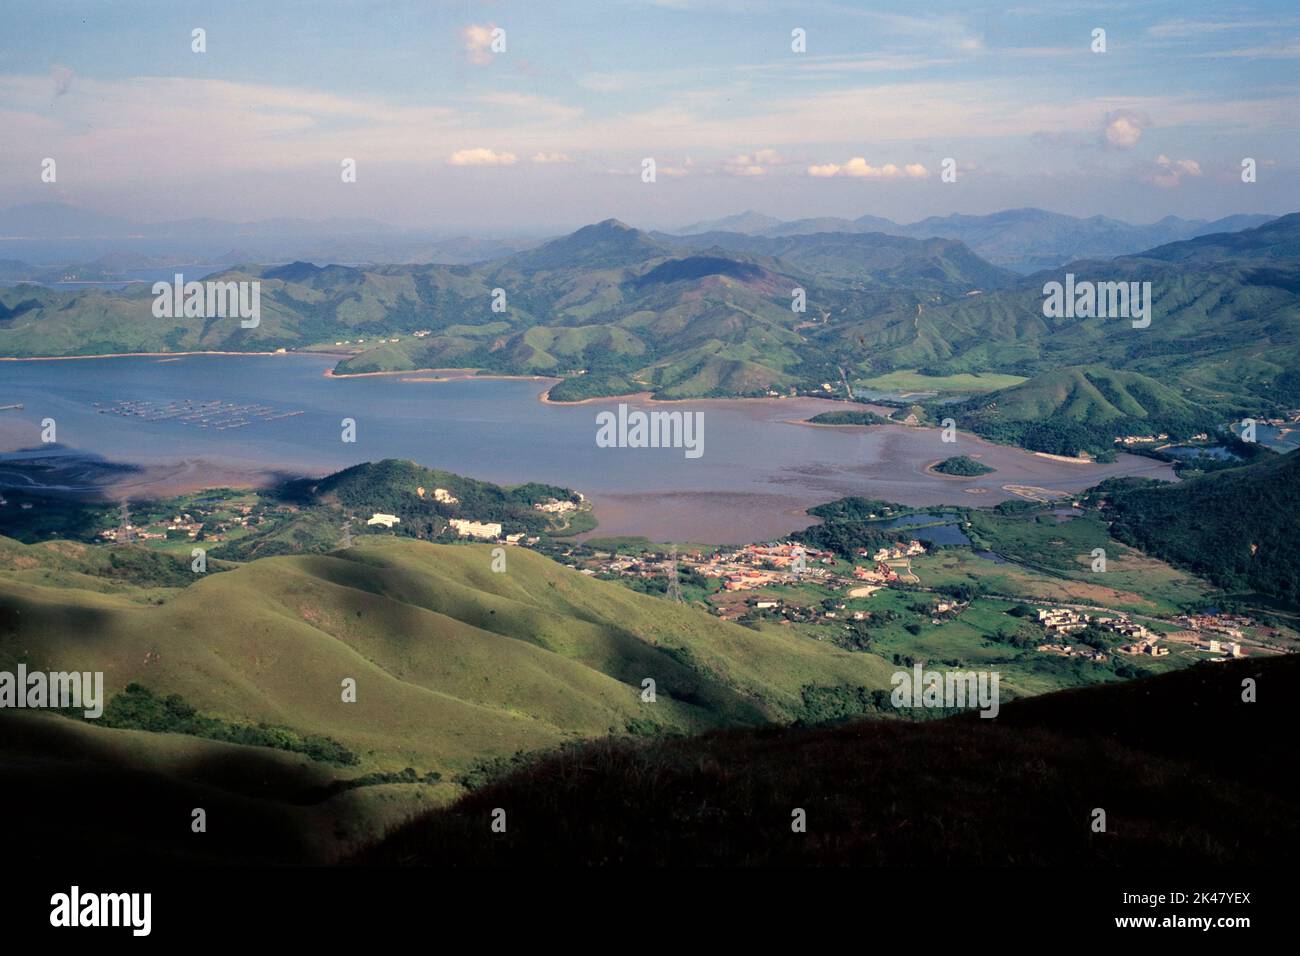 Starling Inlet, vista por la tarde desde Hung Fa Leng (Nido de Robin), noreste de Nuevos Territorios, Hong Kong, 1995 Foto de stock